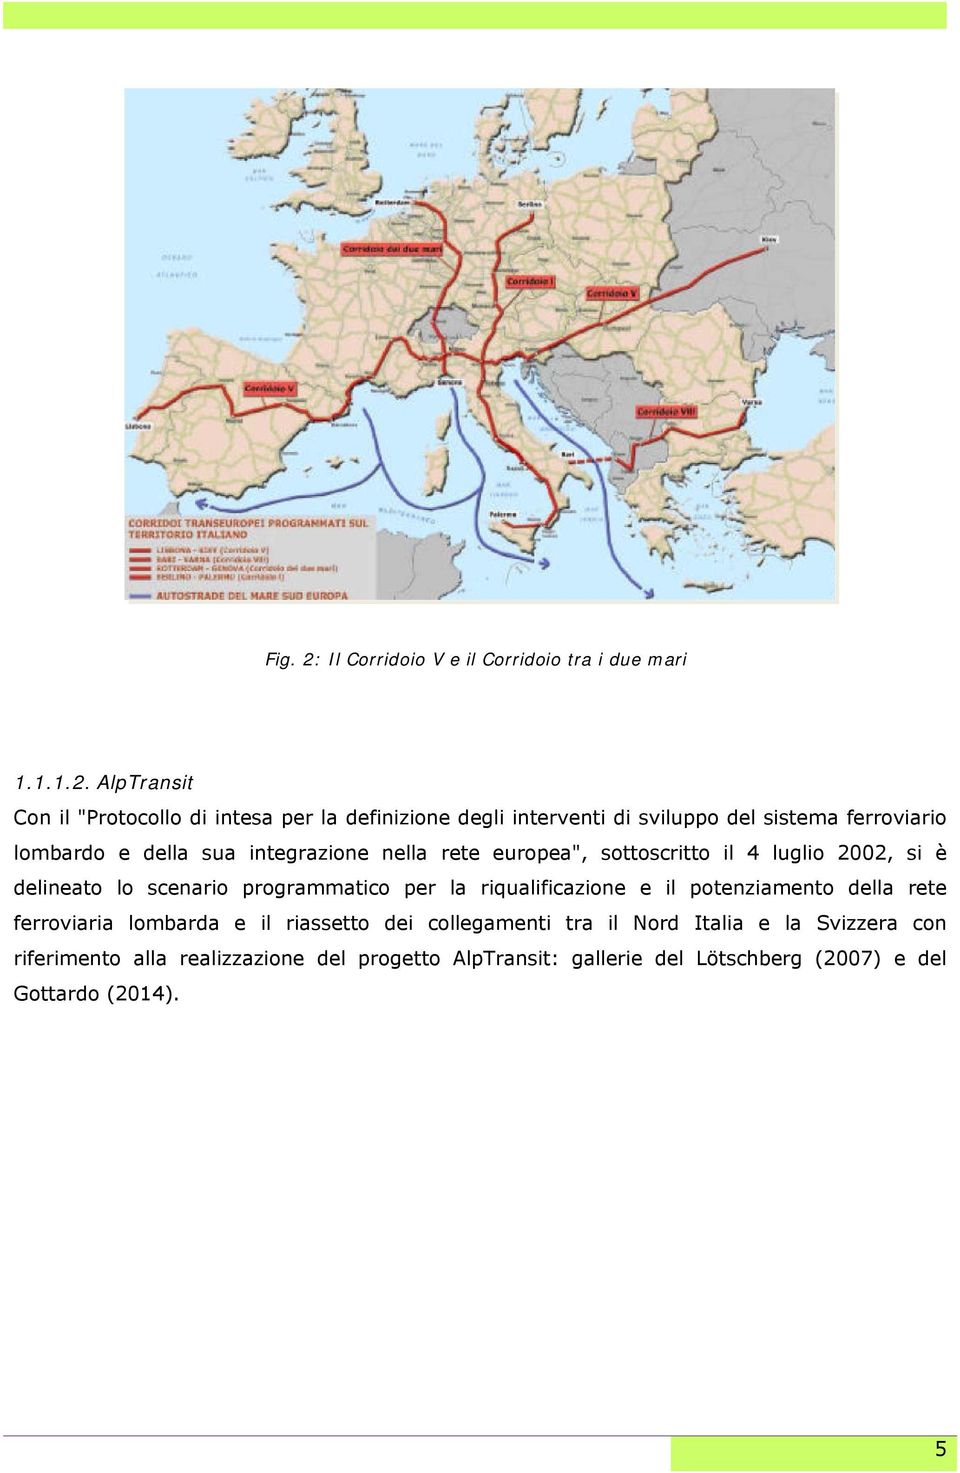 AlpTransit Con il "Protocollo di intesa per la definizione degli interventi di sviluppo del sistema ferroviario lombardo e della sua